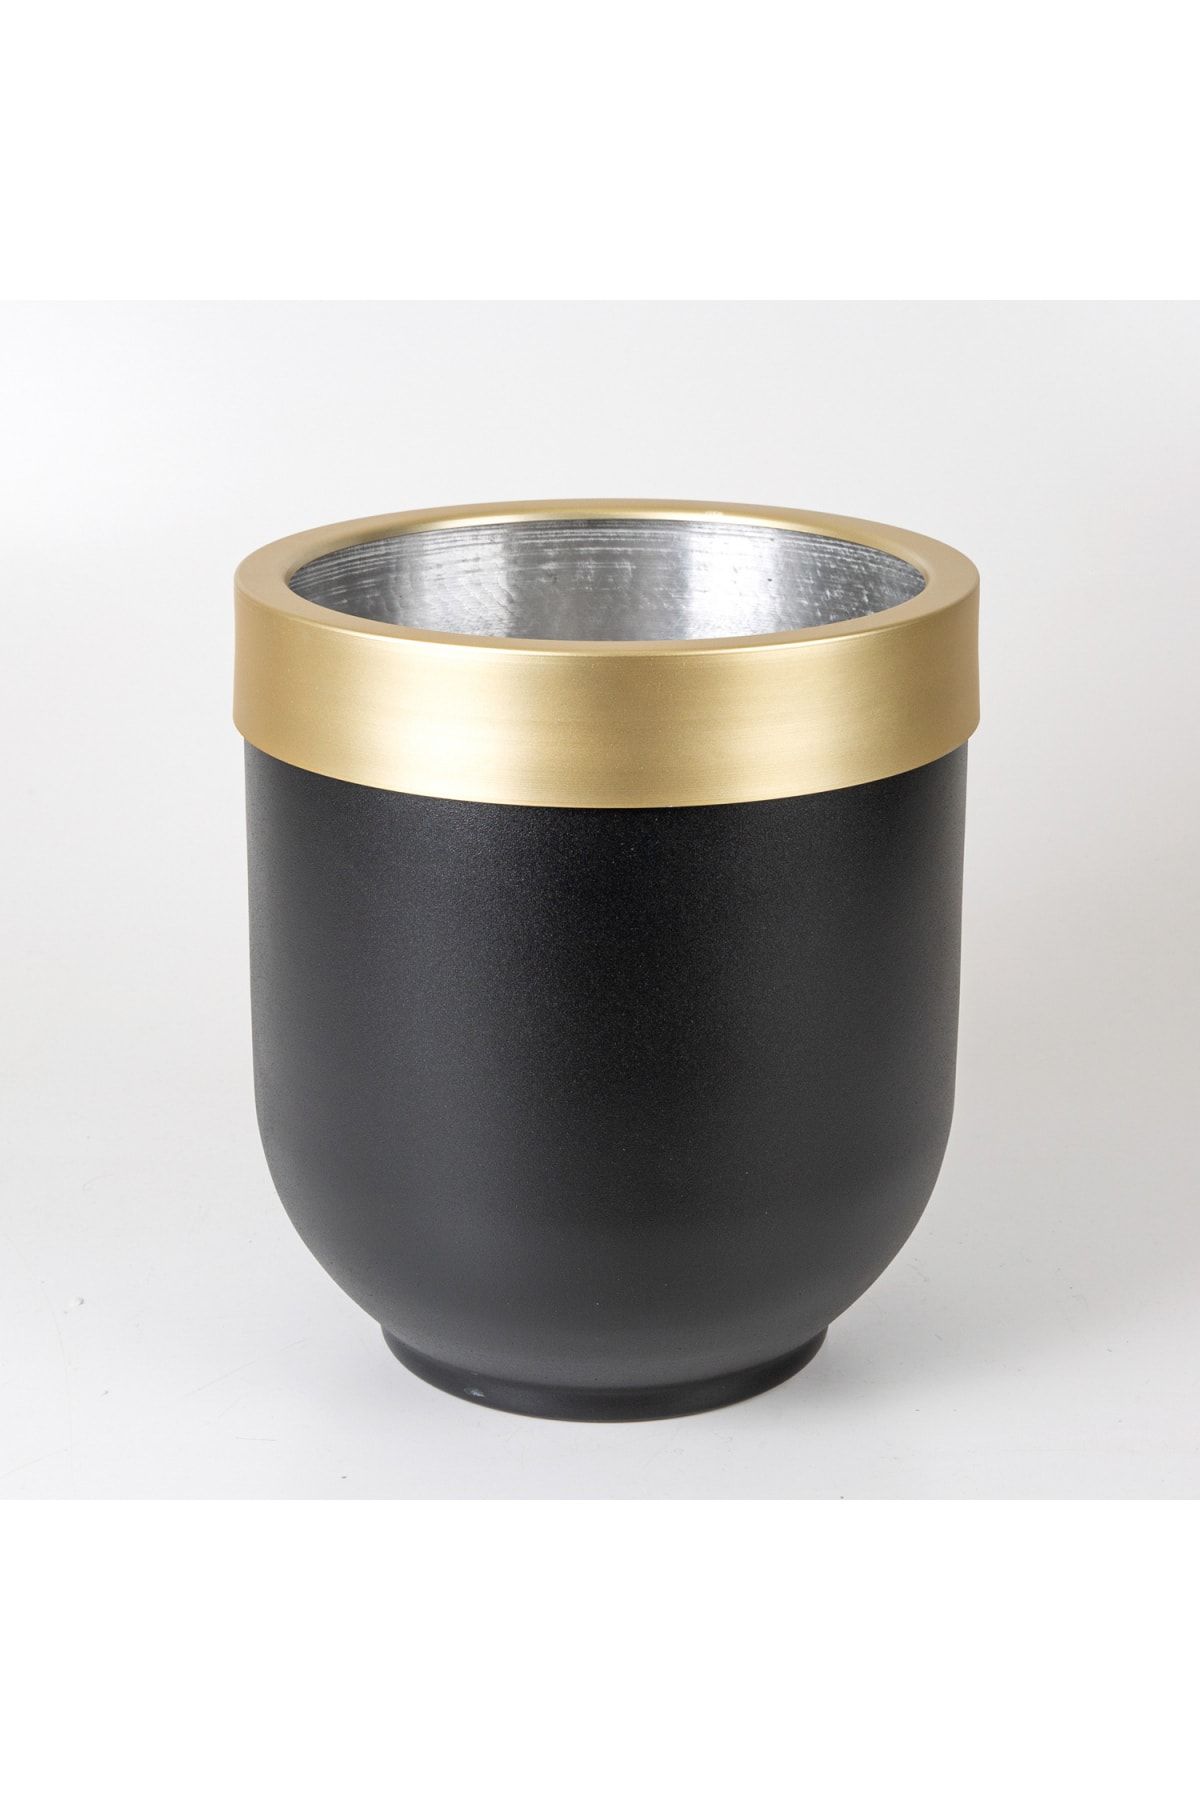 Herdekora Alüminyum Çemberli Davul Saksı Siyah-gold ( Ebat 30x35 Cm.)